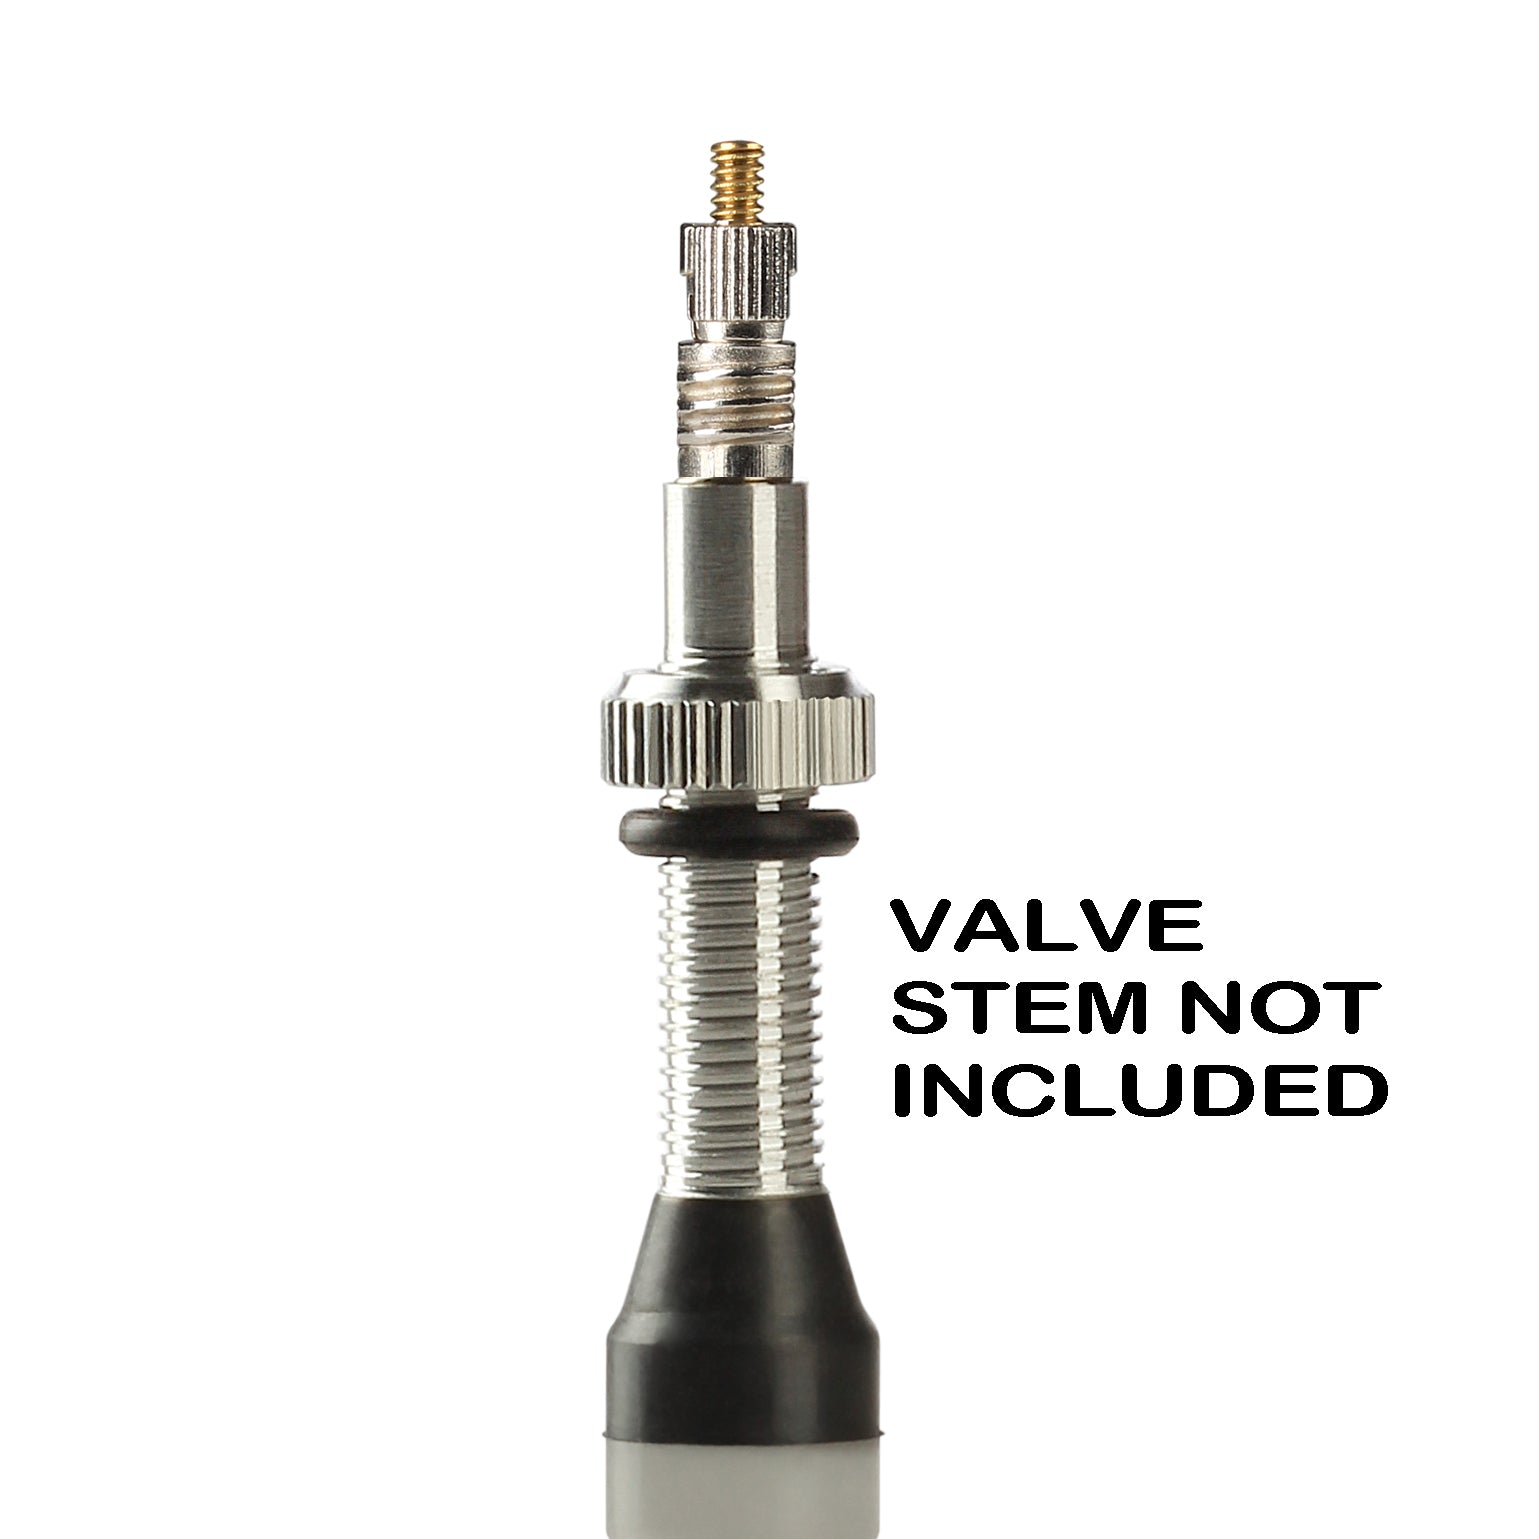 presta valve core removal tool